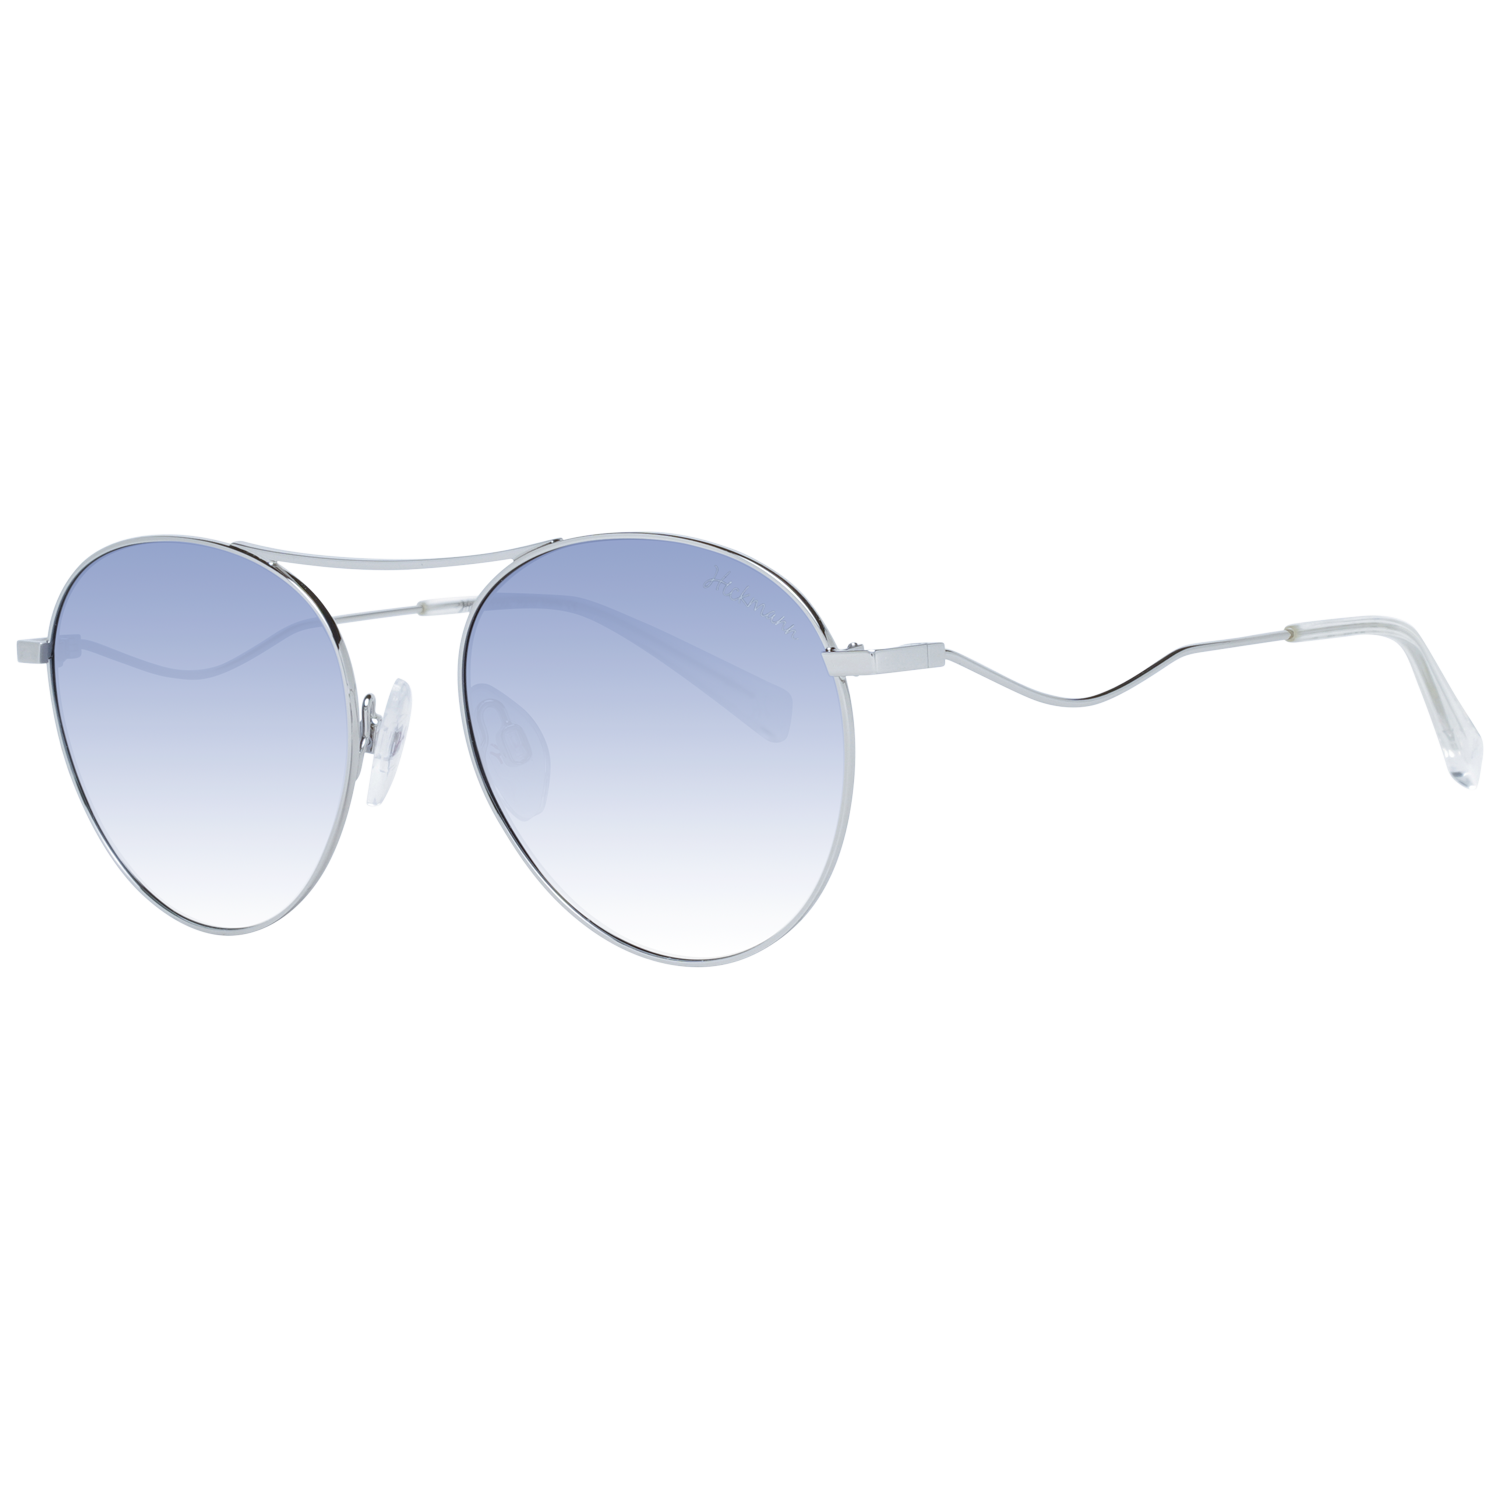 Dámské sluneční brýle Ana Hickmann HI3104 03A 53